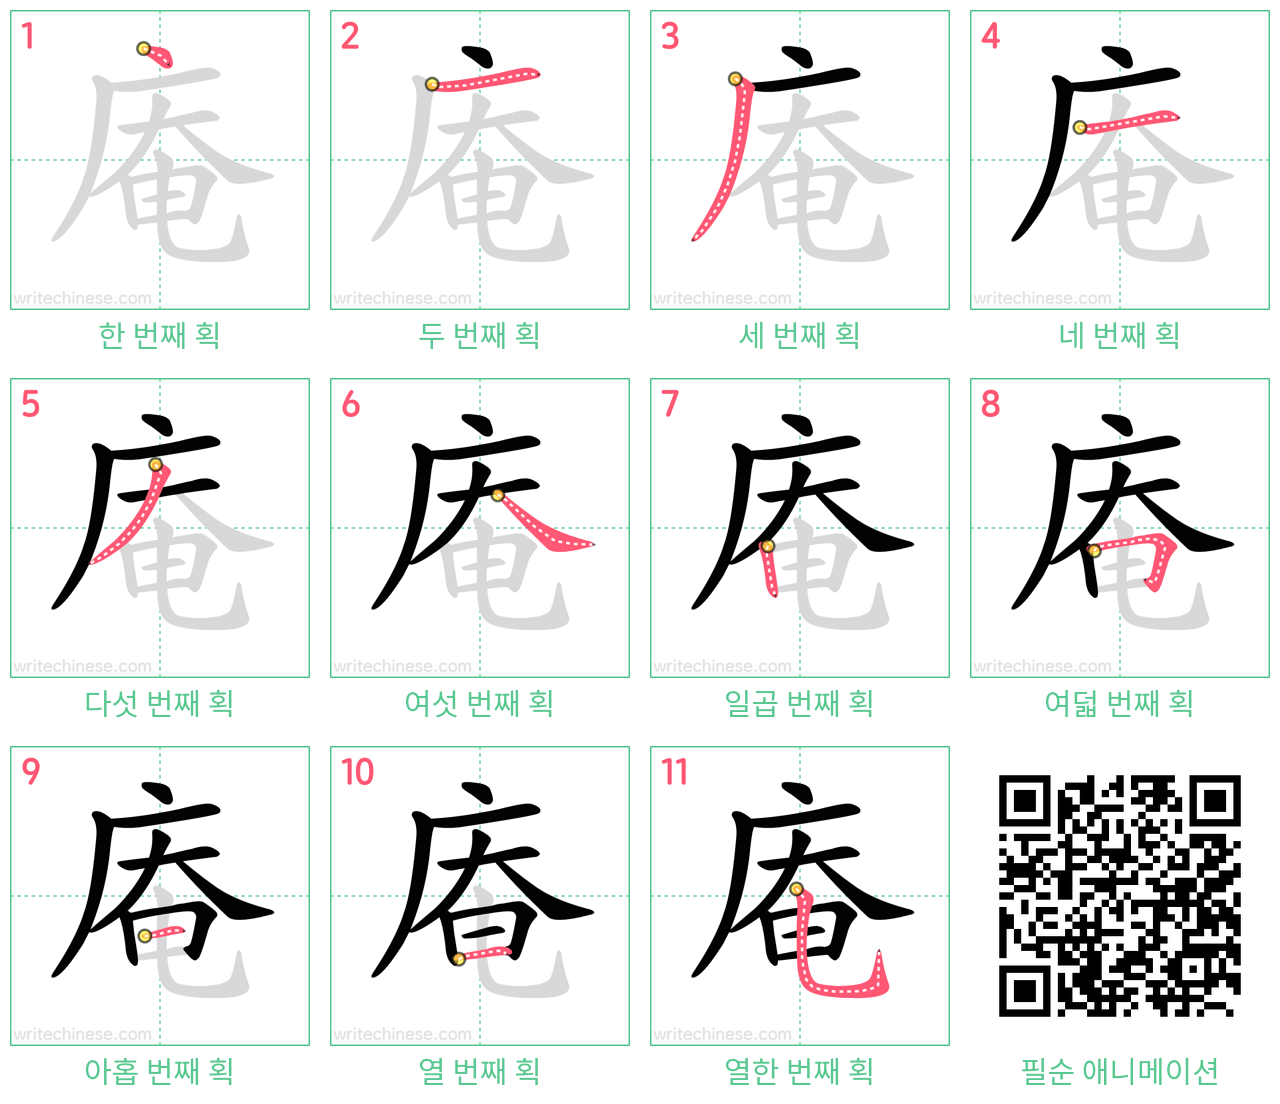 庵 step-by-step stroke order diagrams